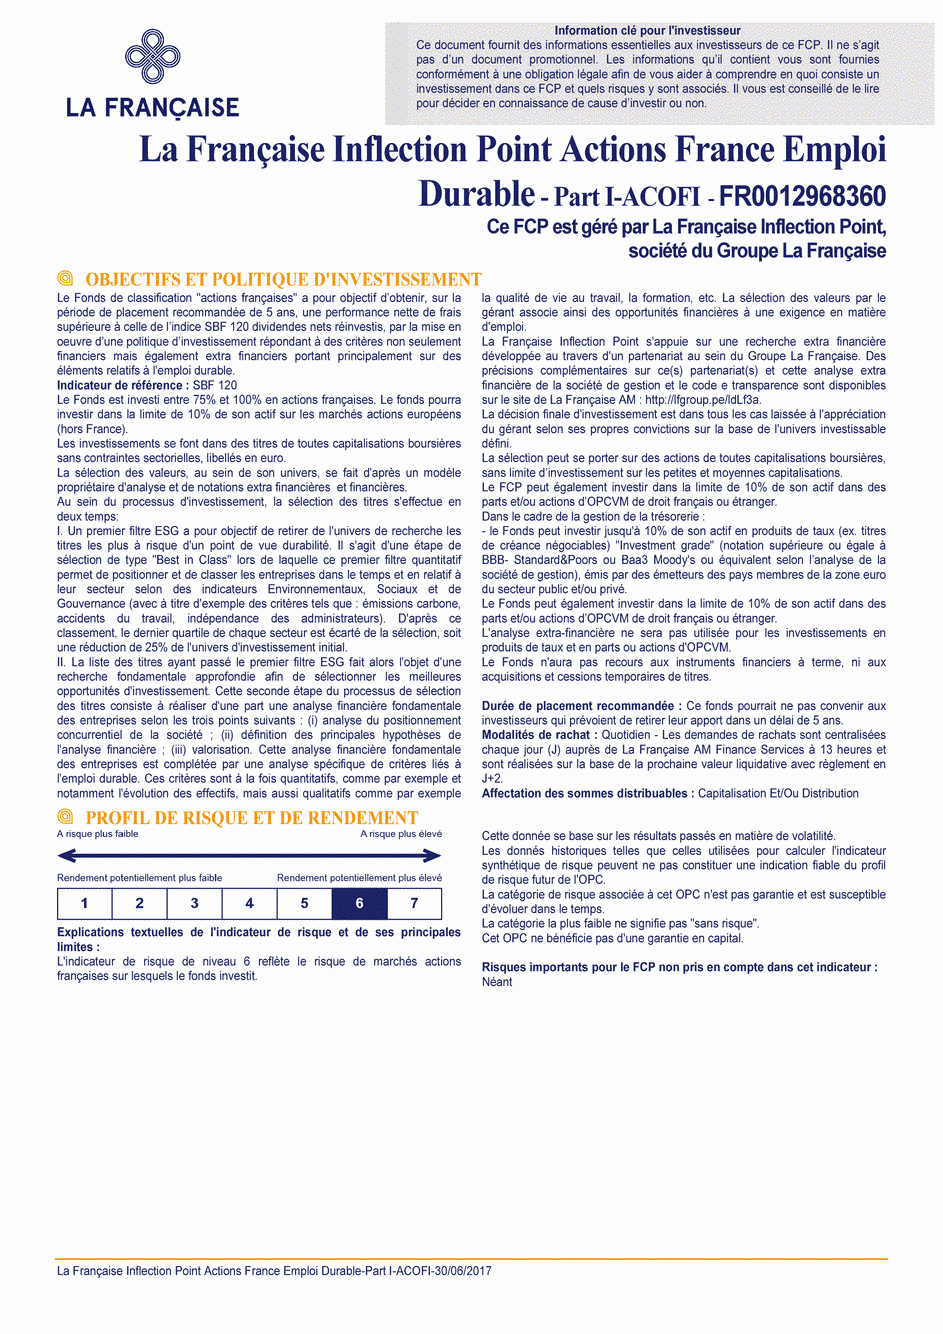 DICI La Française Inflection Point Actions France Emploi Durable - Part I ACOFI - 30/06/2017 - Français